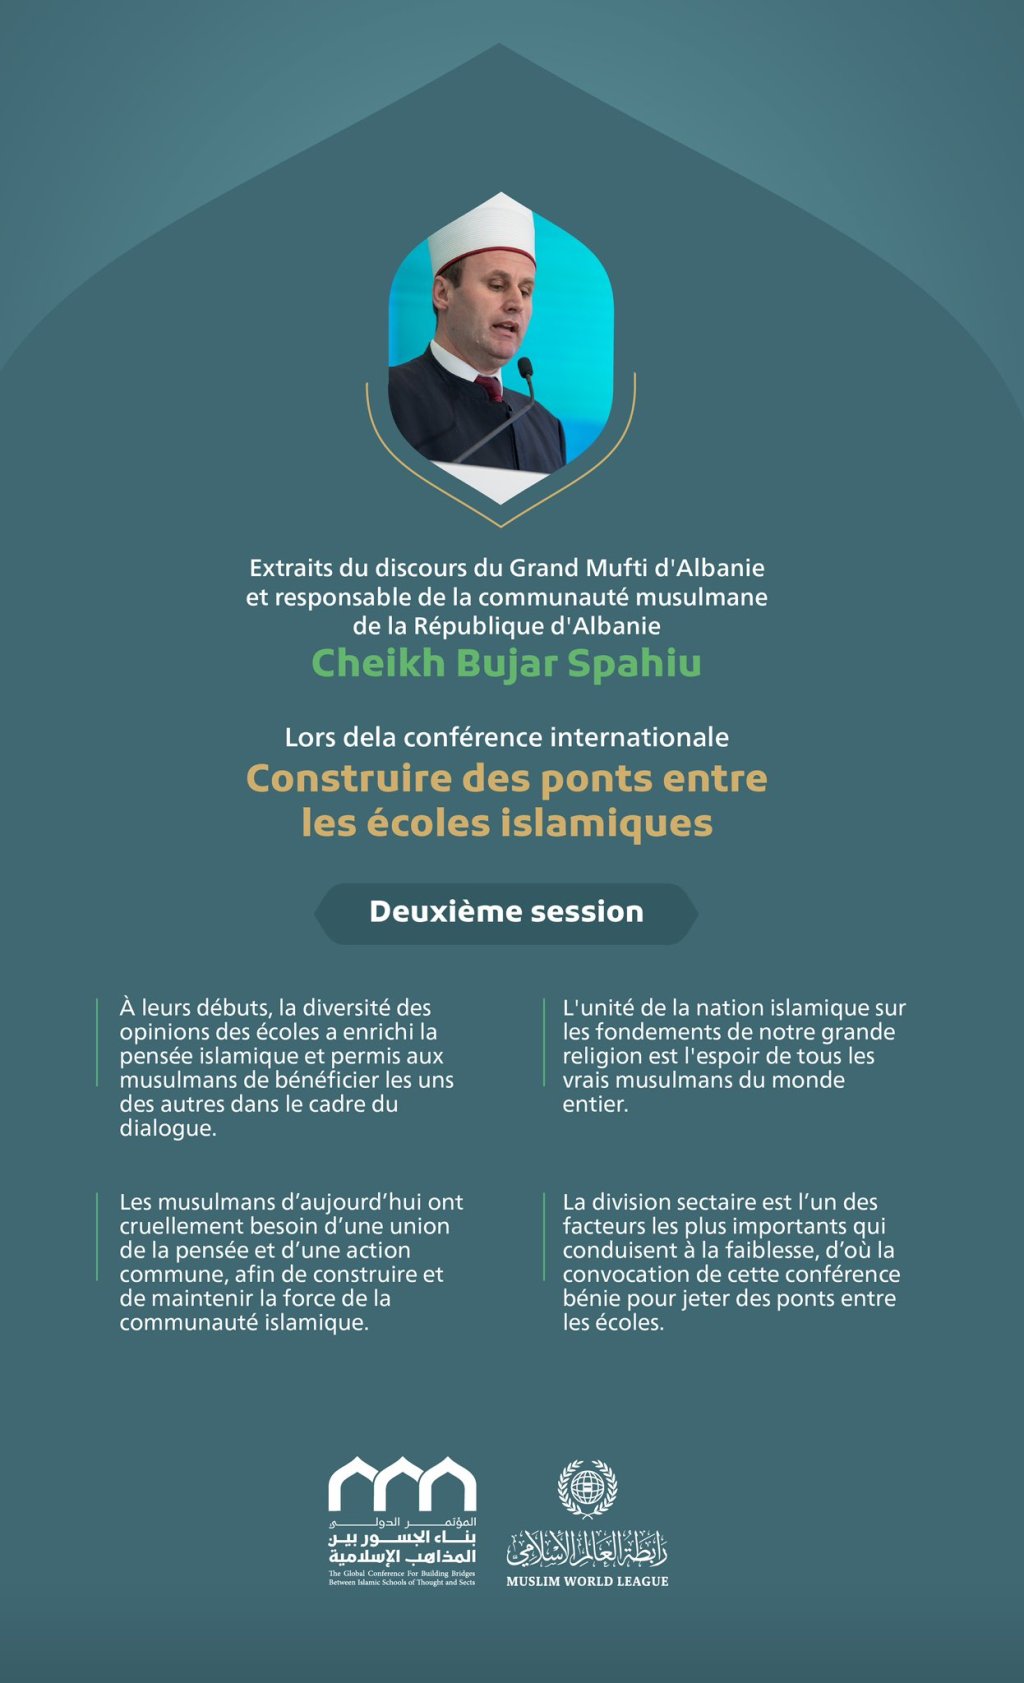 Extraits du discours du Grand Mufti d'Albanie et responsable de la communauté musulmane de la République d'Albanie Cheikh Bujar Spahiu lors de la conférence internationale